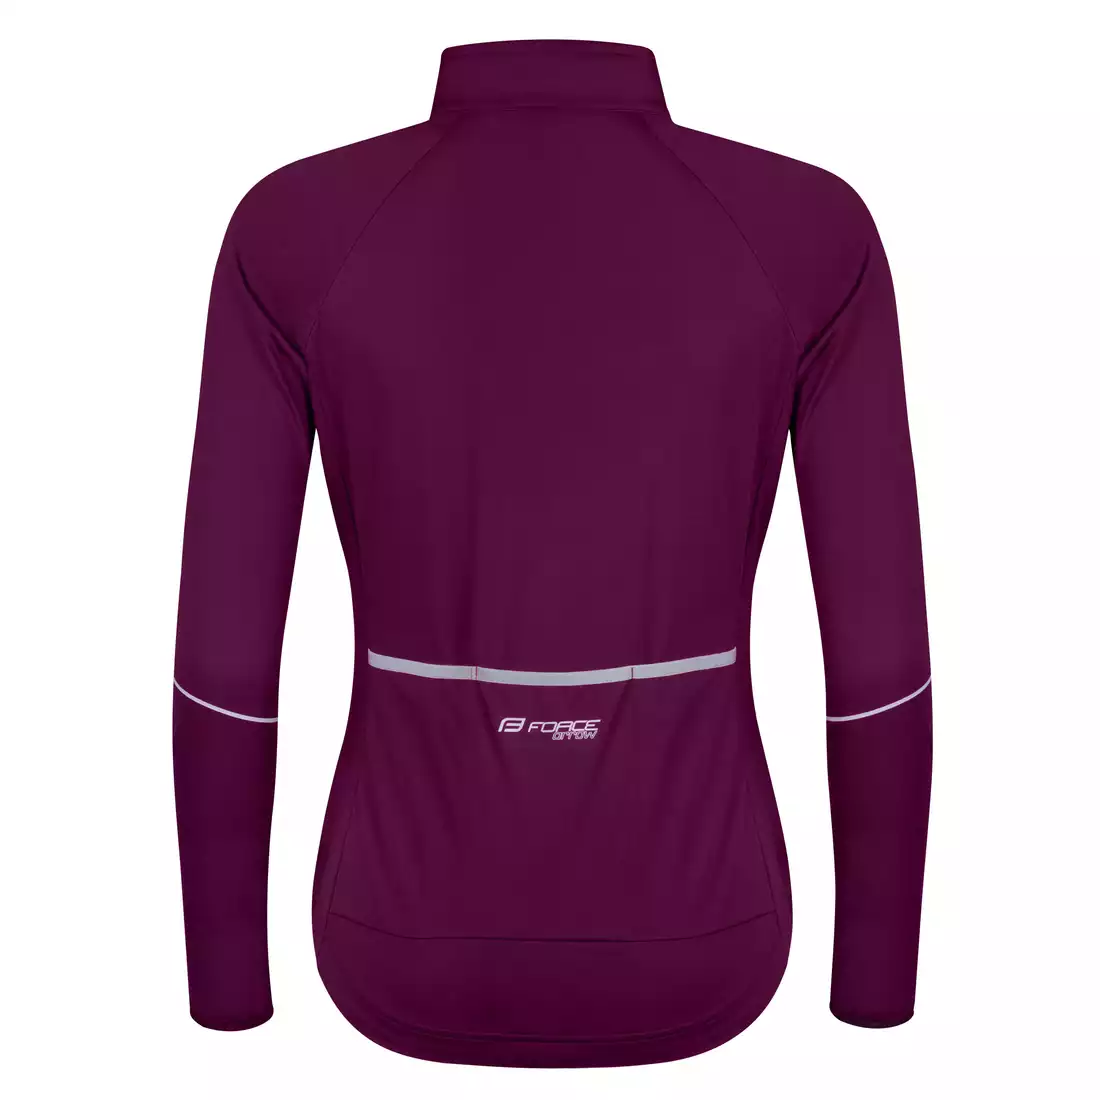 FORCE women's cycling jacket ARROW LADY purple 8998022